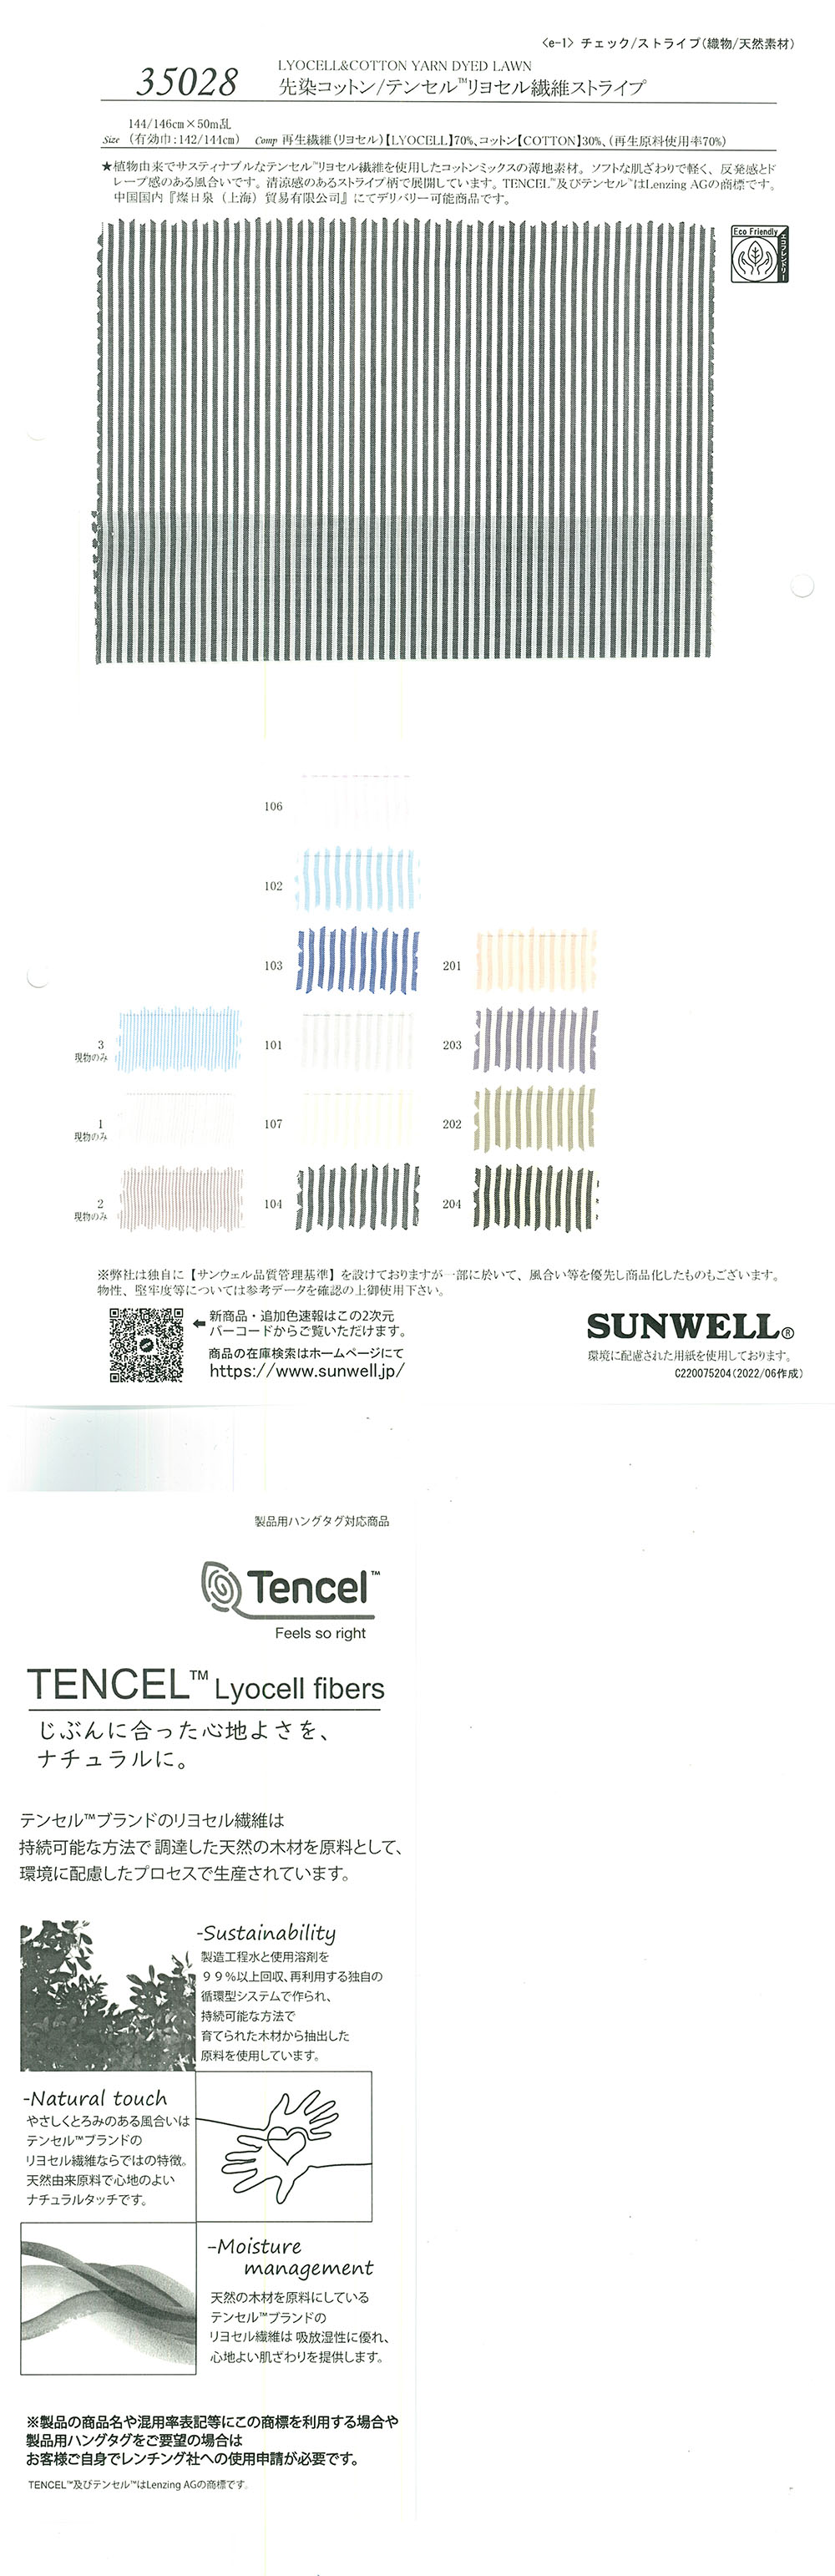 35028 Franja De Fibra De Lyocell De Algodón Teñido En Hilo/Tencel(TM)[Fabrica Textil] SUNWELL